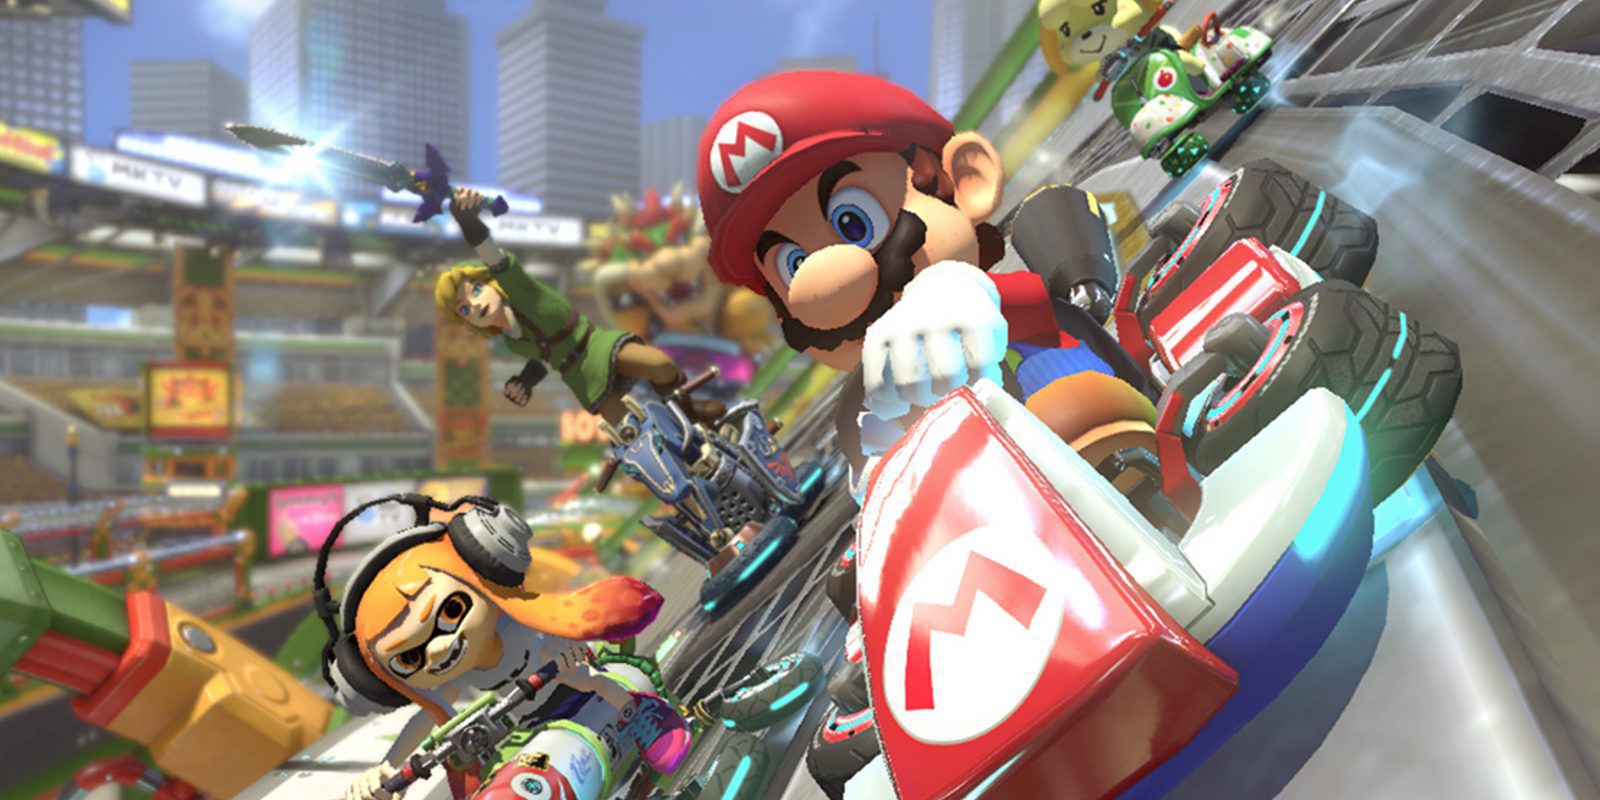 'Mario Kart 8 Deluxe' de Nintendo Switch sufre de muchos fallos en su modo online